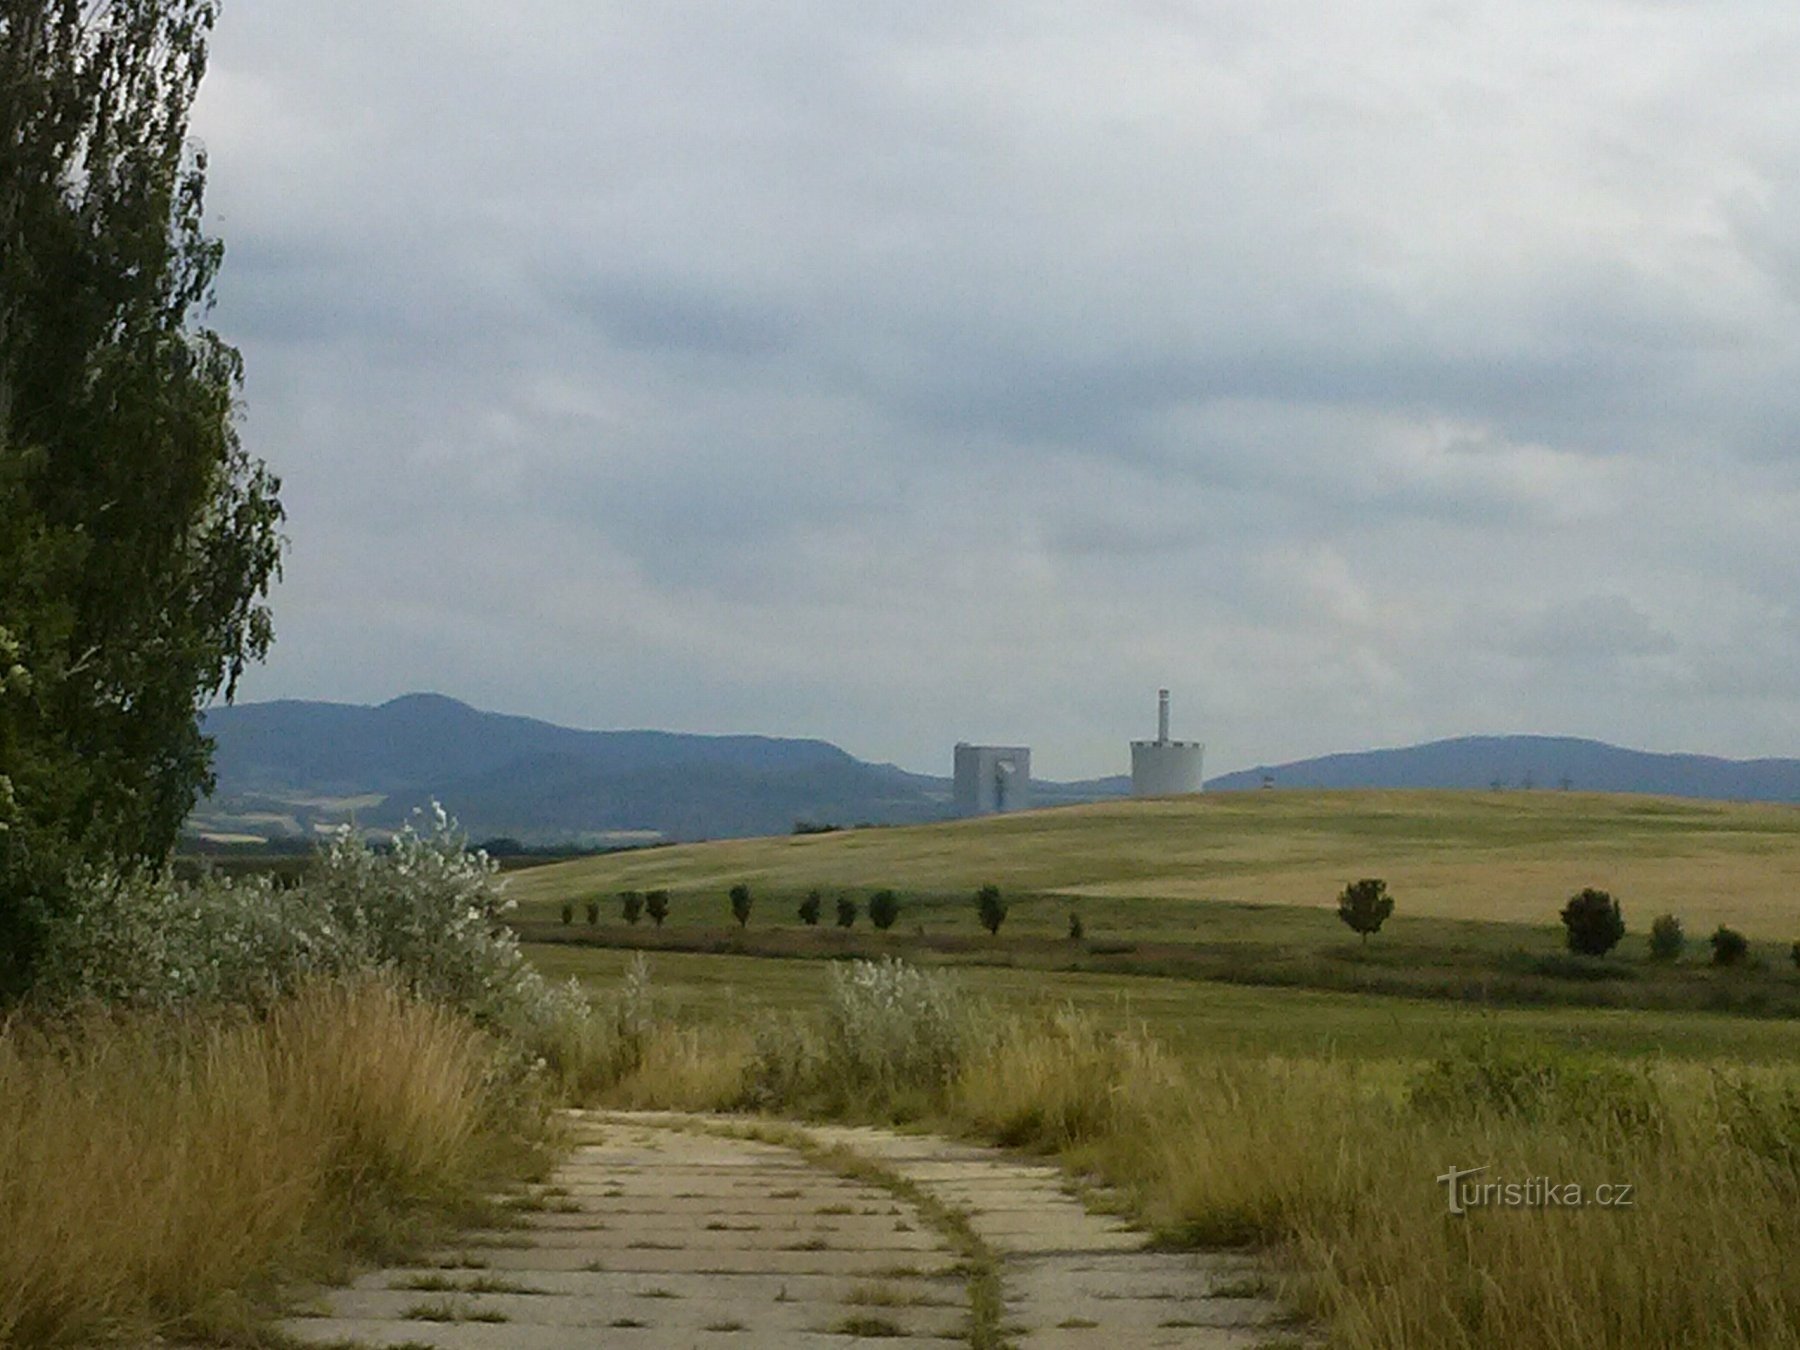 Με θέα στο τοπίο, οι πύργοι του σταθμού ηλεκτροπαραγωγής Chotějovice κρυφοκοιτάζουν